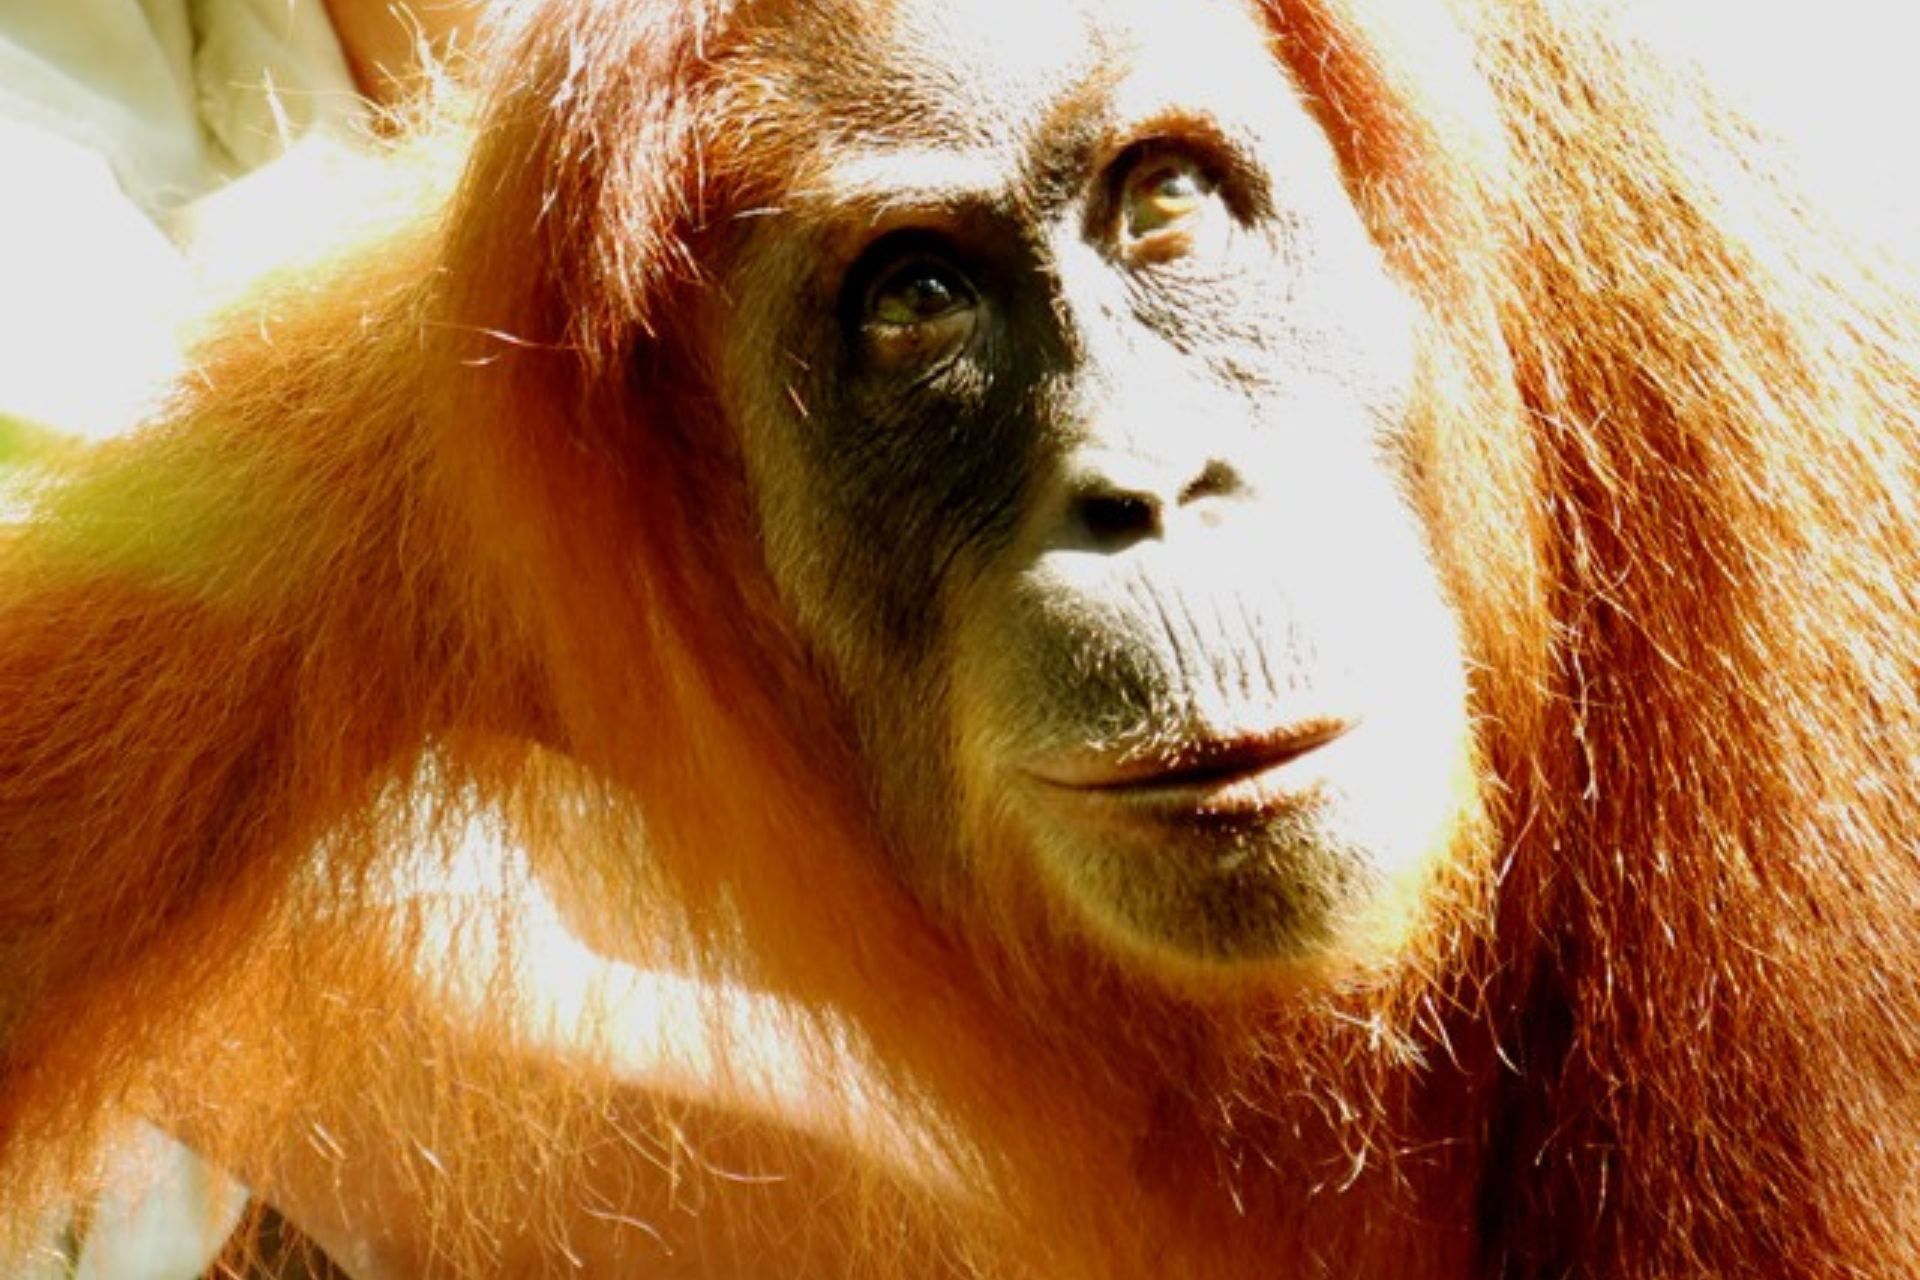 Cara de orangután iluminada por el sol